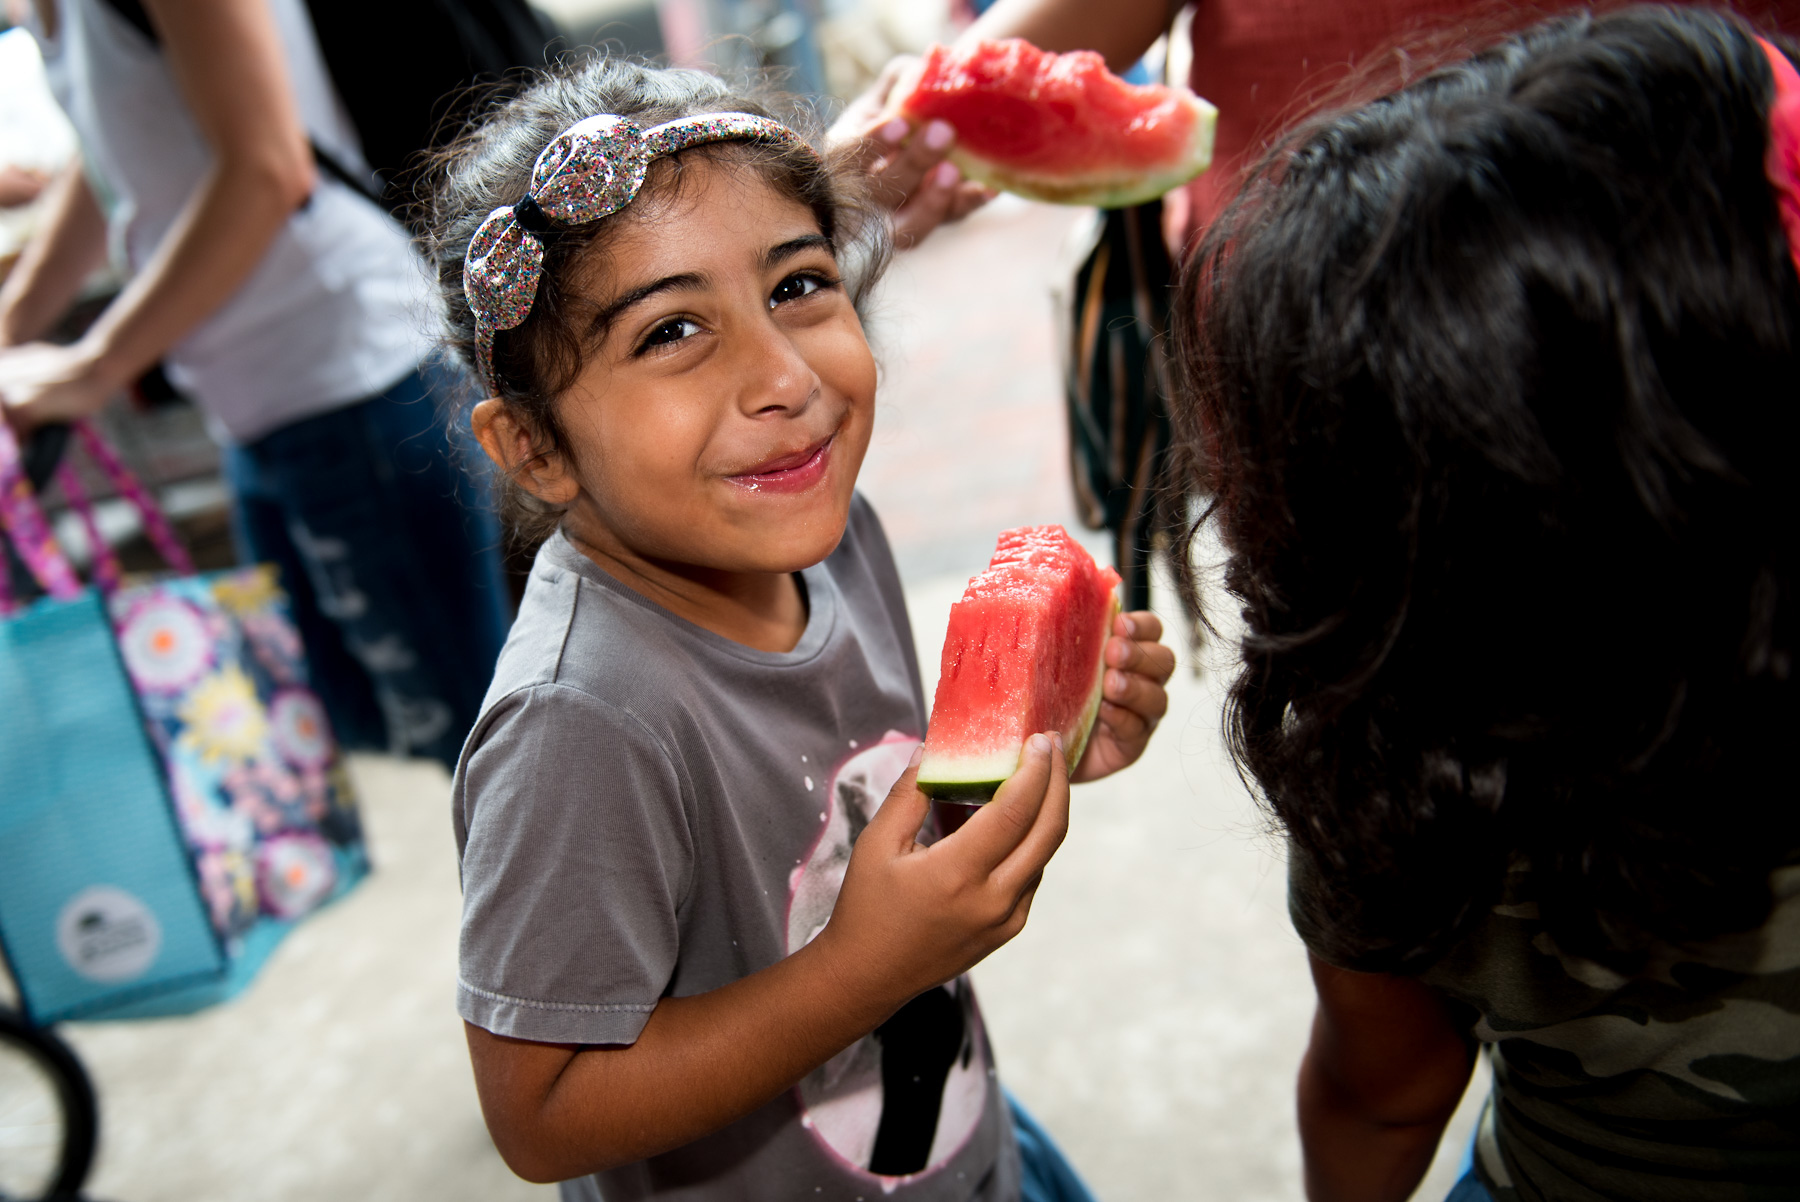 Gallery Dallas' Original Watermelon Festival Takes Over the Farmers